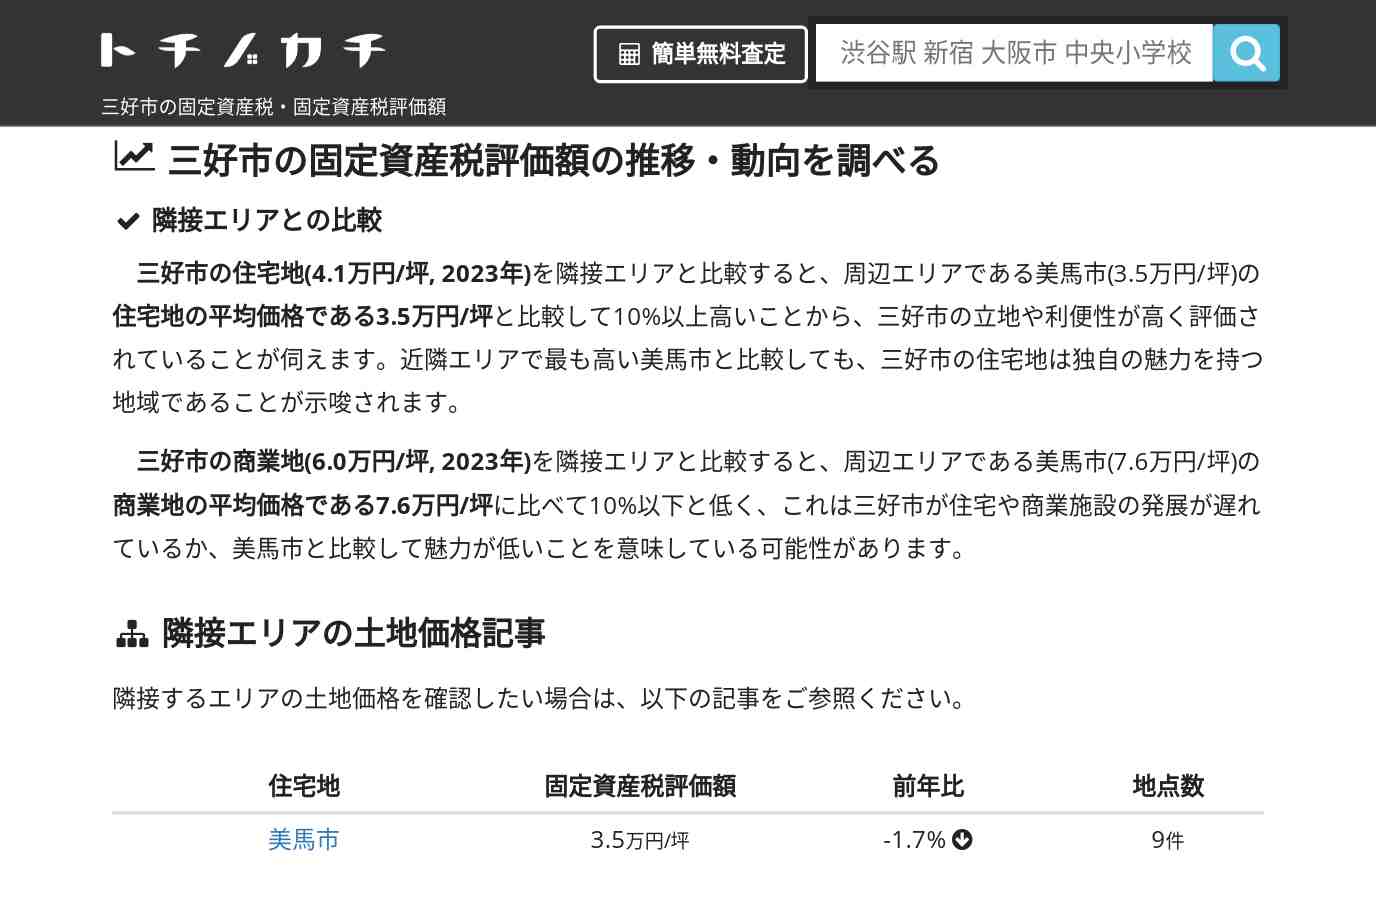 吾橋小学校(徳島県 三好市)周辺の固定資産税・固定資産税評価額 | トチノカチ